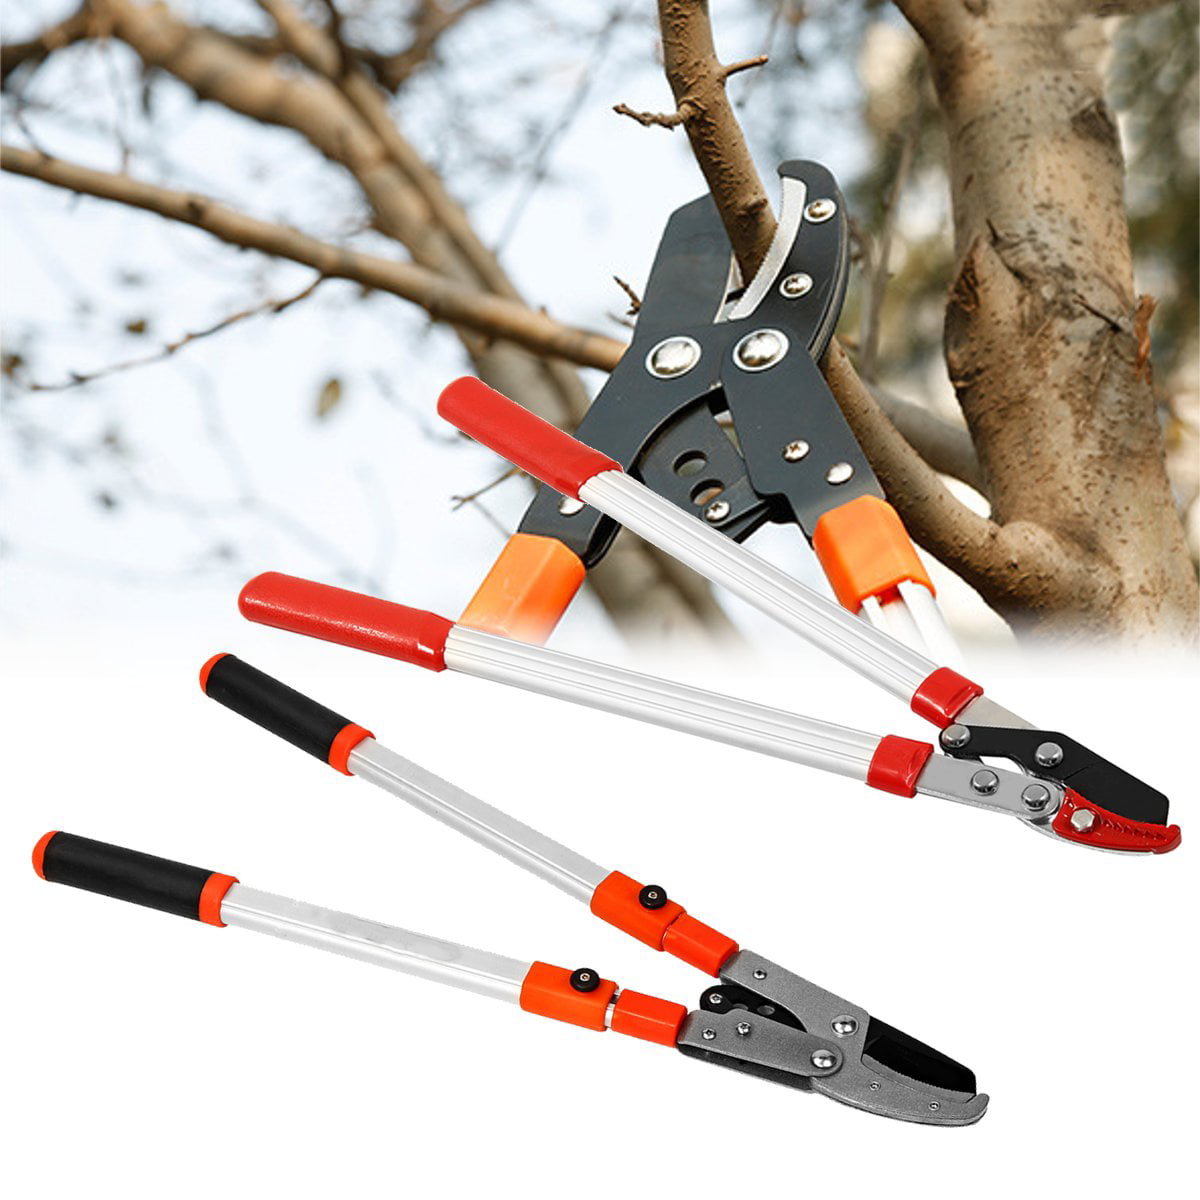 Garden Tools & Equipment, Telescopic Tree Ratchet Lopper Pruner